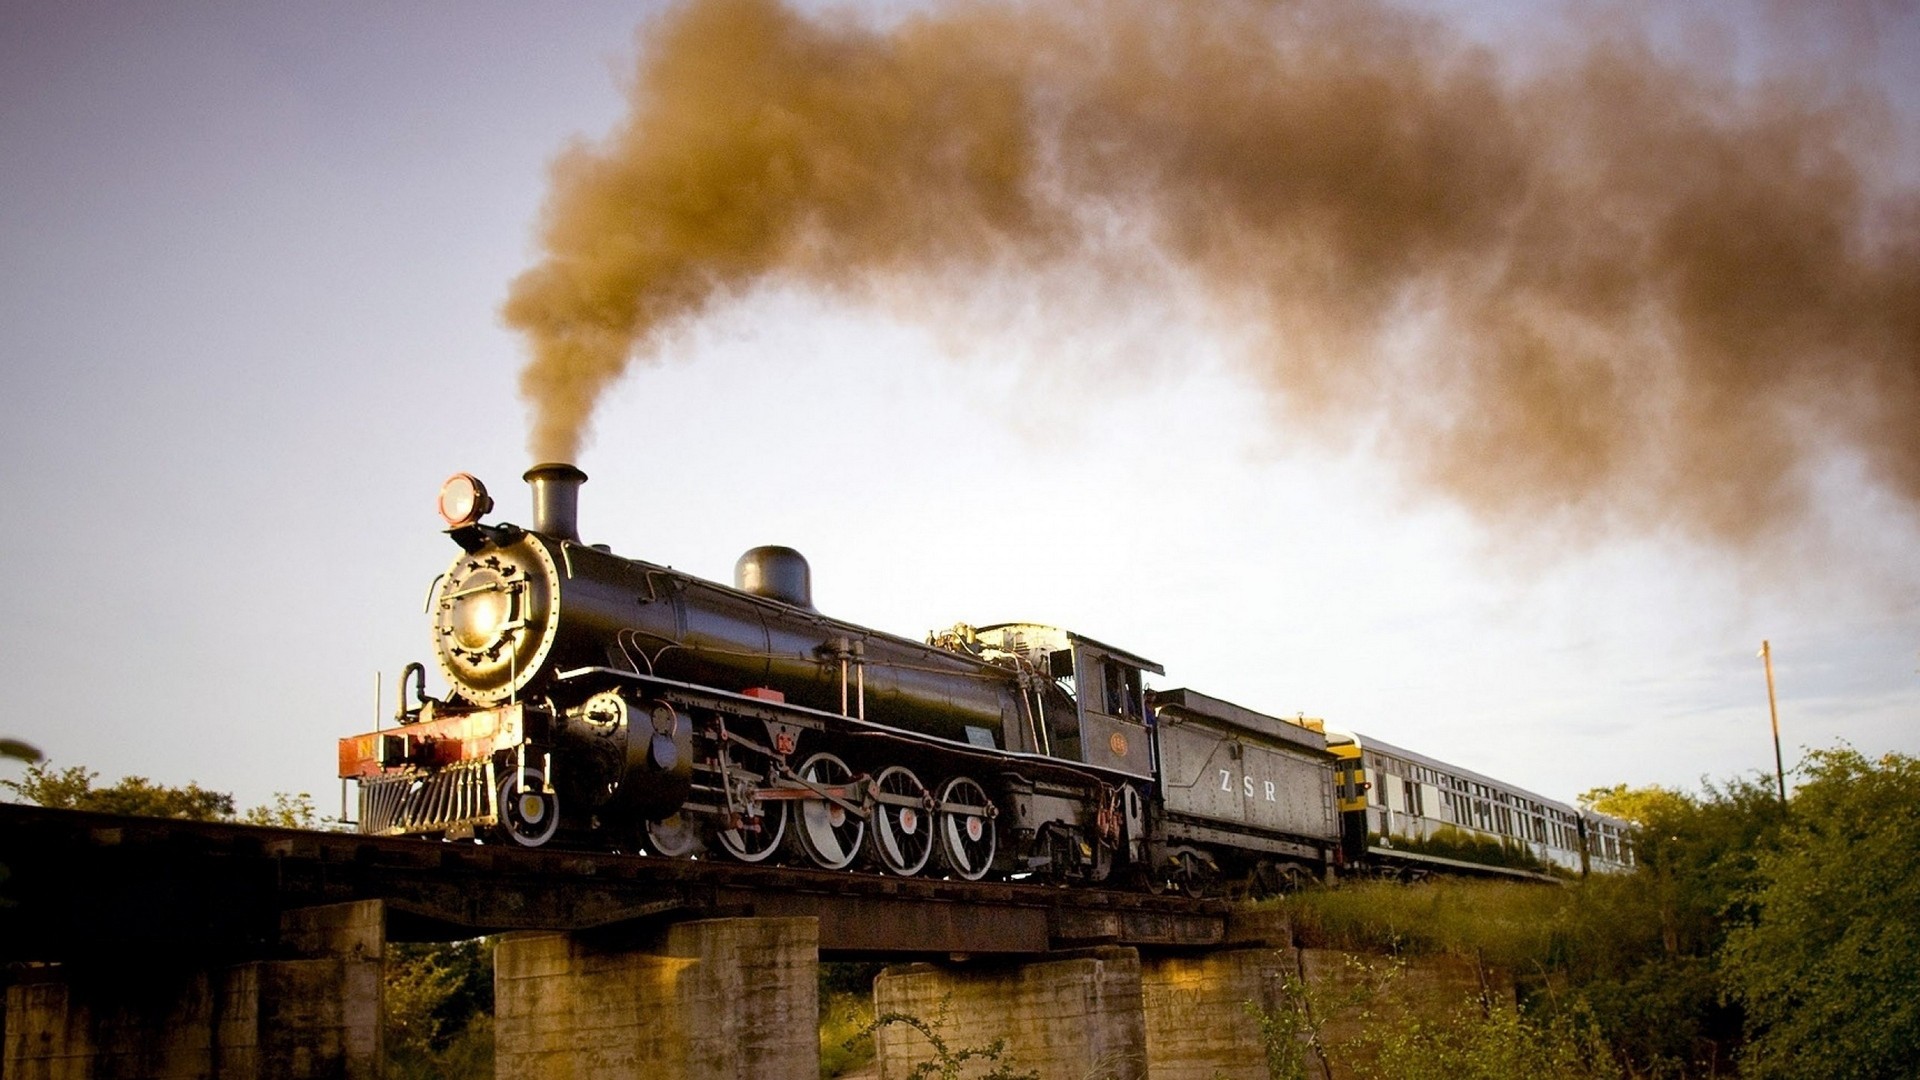 General 1920x1080 steam locomotive bridge vintage vehicle train Steam Train smoke